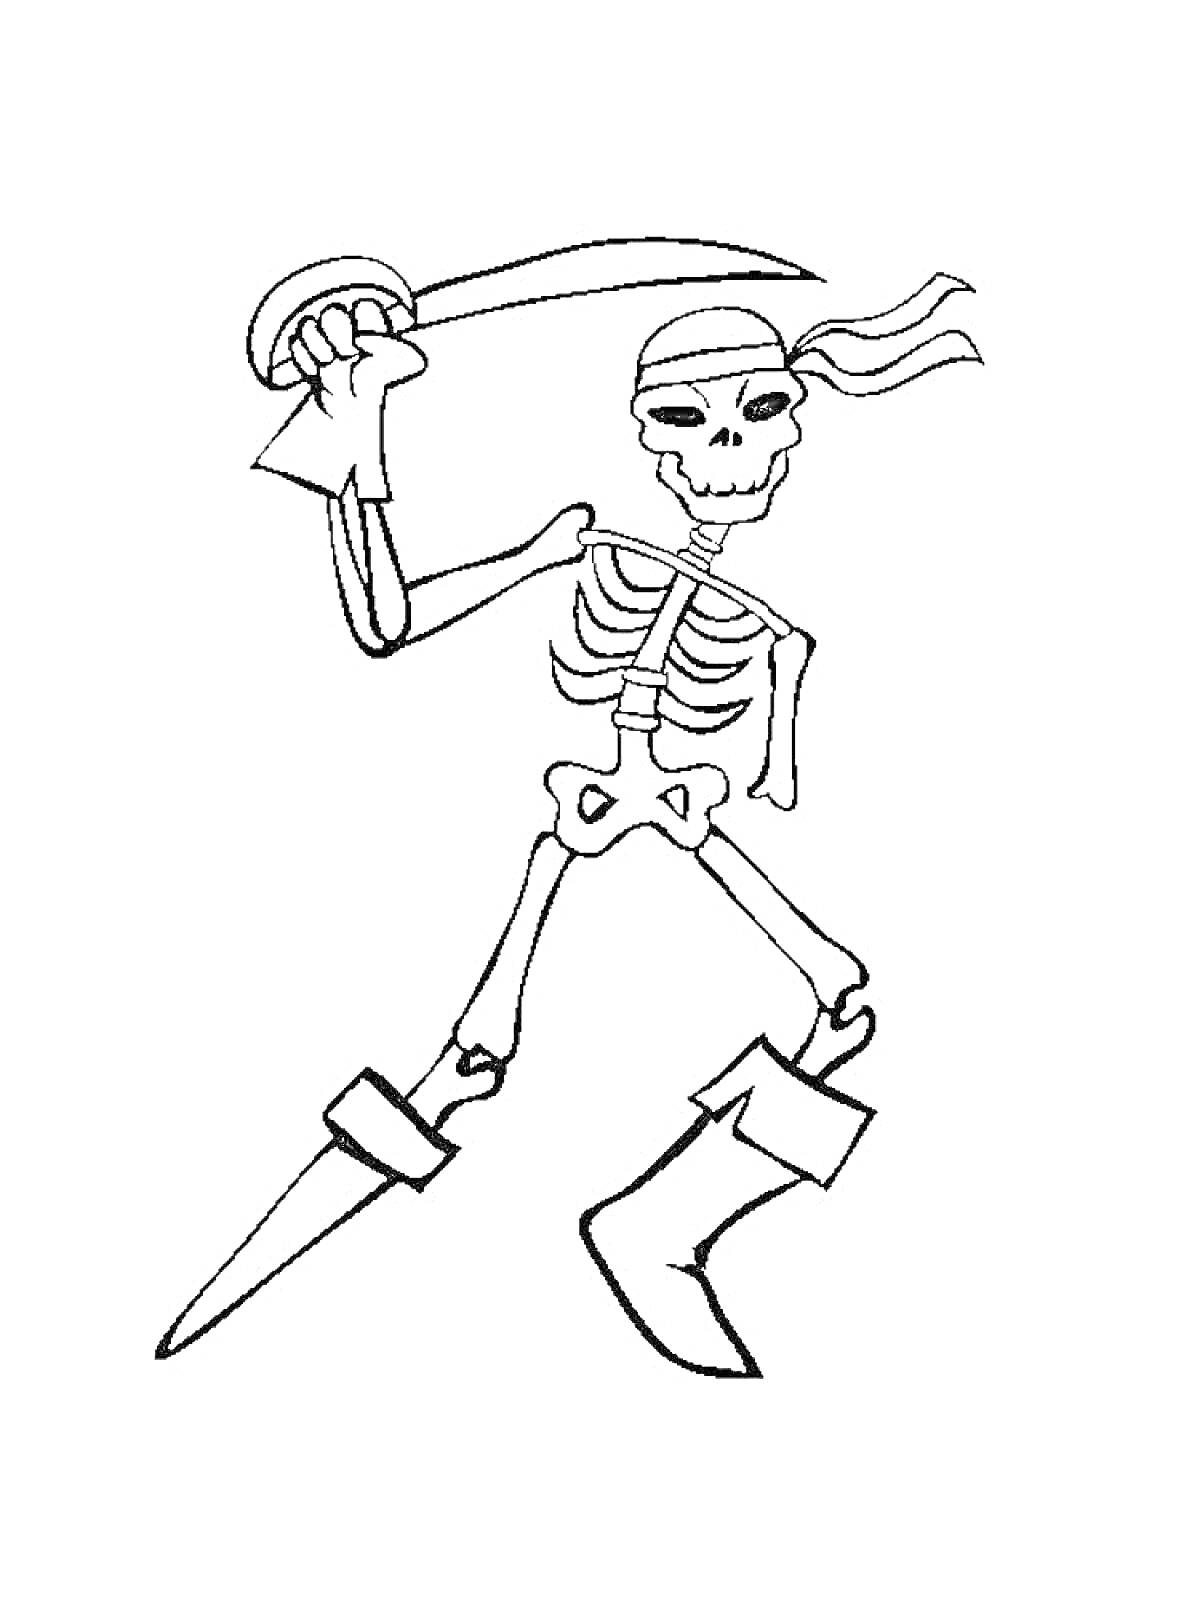 Раскраска Скелет-пират с повязкой на голове и саблей в руке